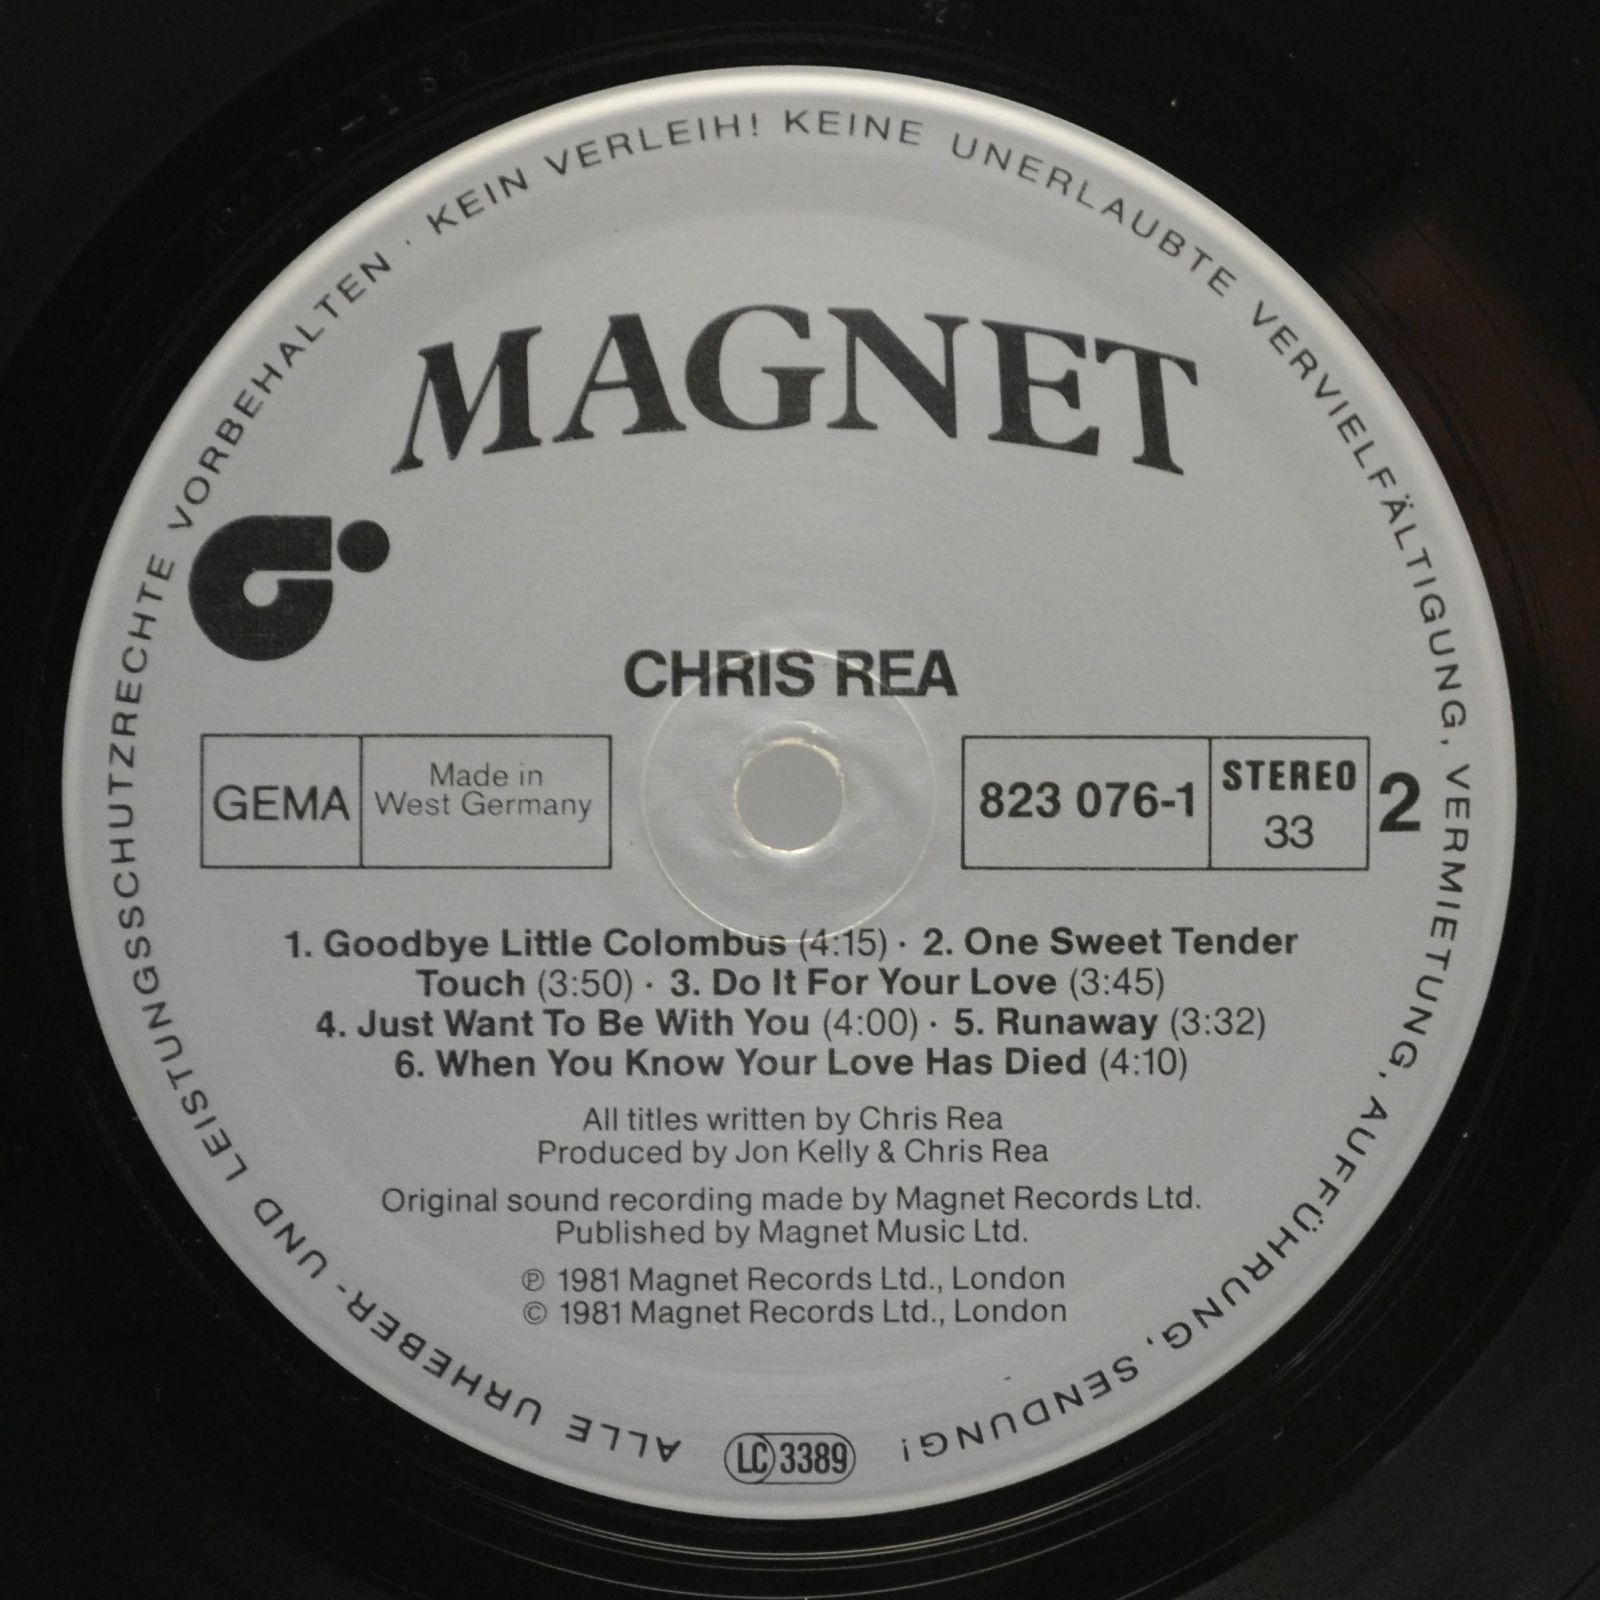 Chris Rea — Chris Rea, 1981